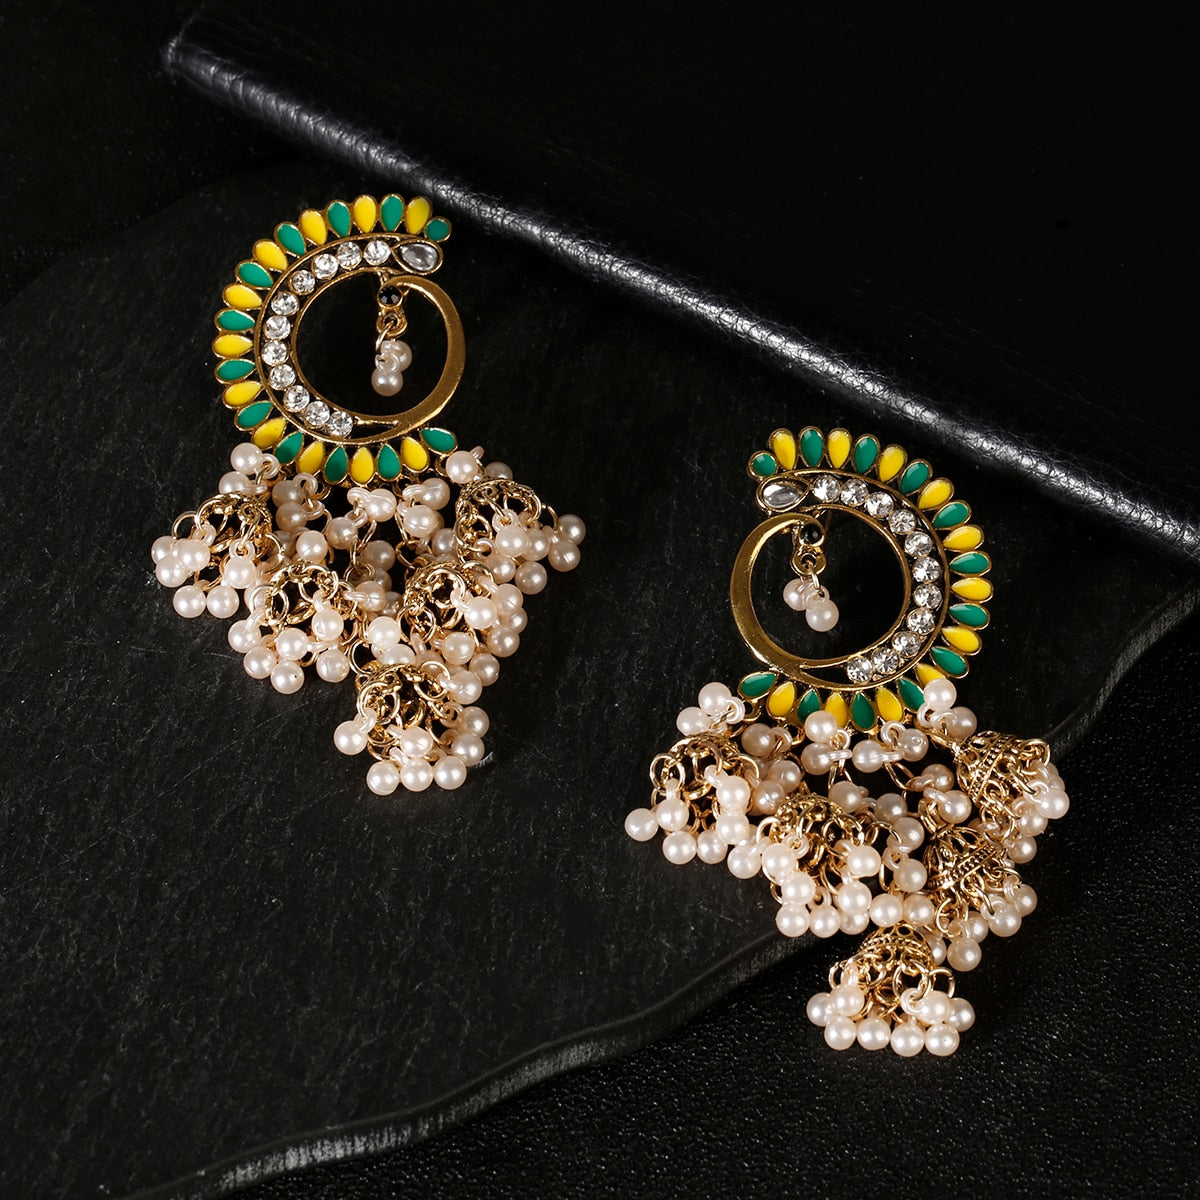 Indian Jewelry Women Gold Silver Color Indian Jewelry Half Moon Gypsy Vintage Boho Tribe Tassel Drop Earrings Jhumka Earrings